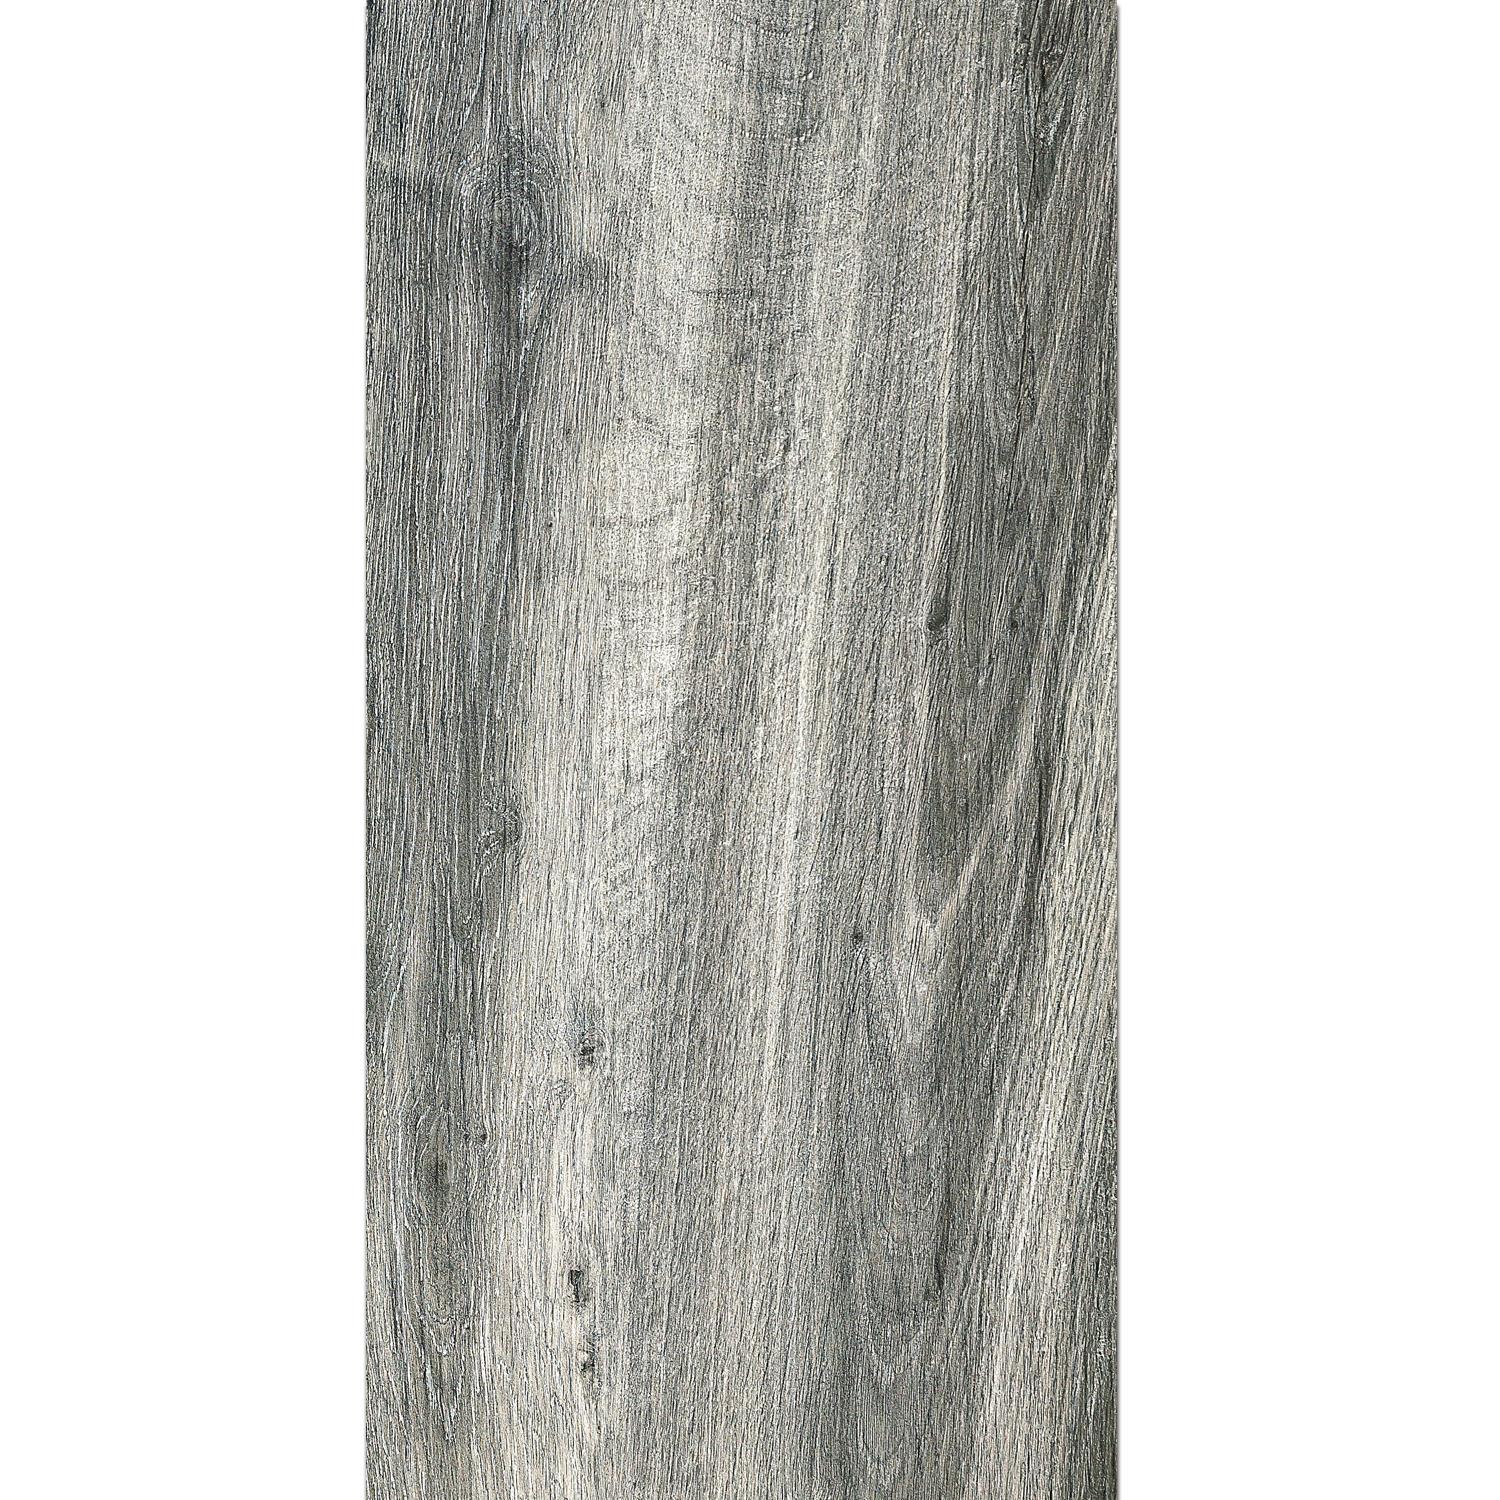 Terasové Desky Starwood Dřevěný Vzhled Grey 45x90cm